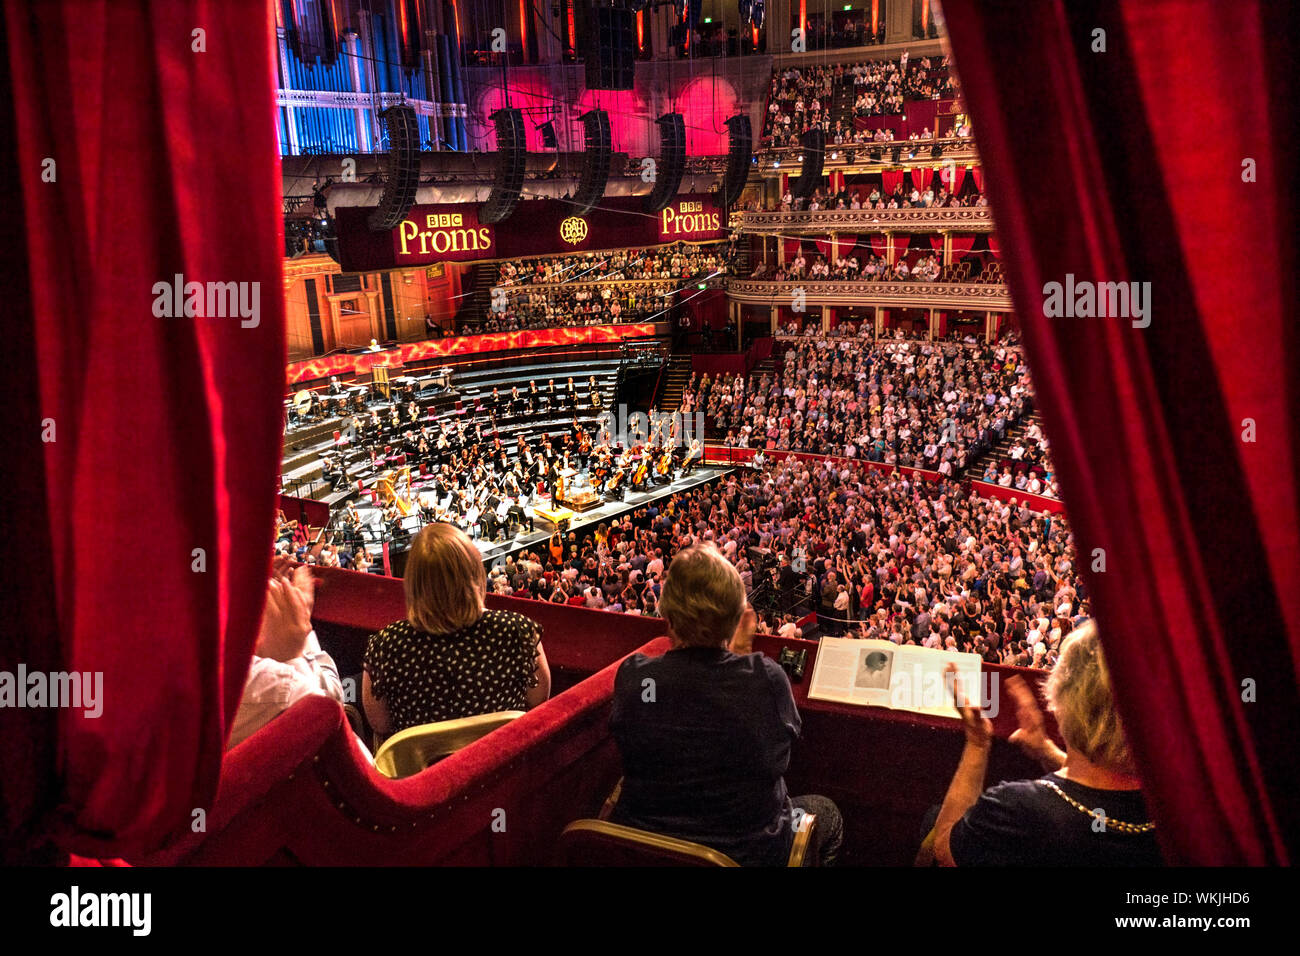 ALBERT HALL INTÉRIEUR Performance BBC Proms avec public applaudissant des mains, Sheku Kanneh-Mason violoncelliste britannique en tenant un arc view de velours rouge de luxe privée à l'auditoire et l'étape de l'orchestre derrière Londres UK dais Banque D'Images